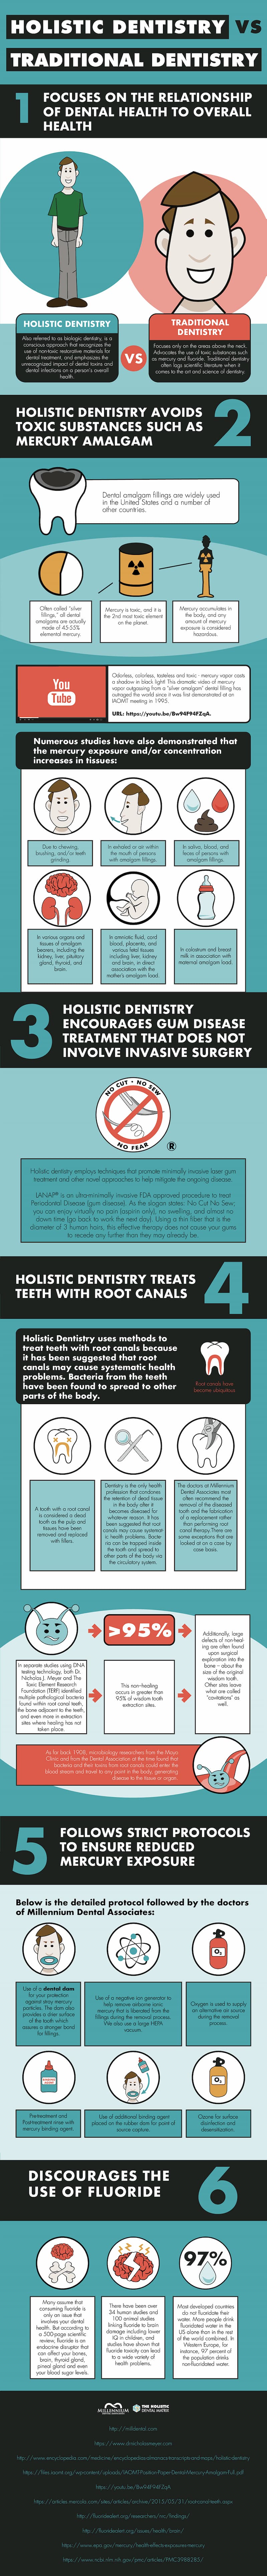 Holistic dentistry vs. traditional dentistry